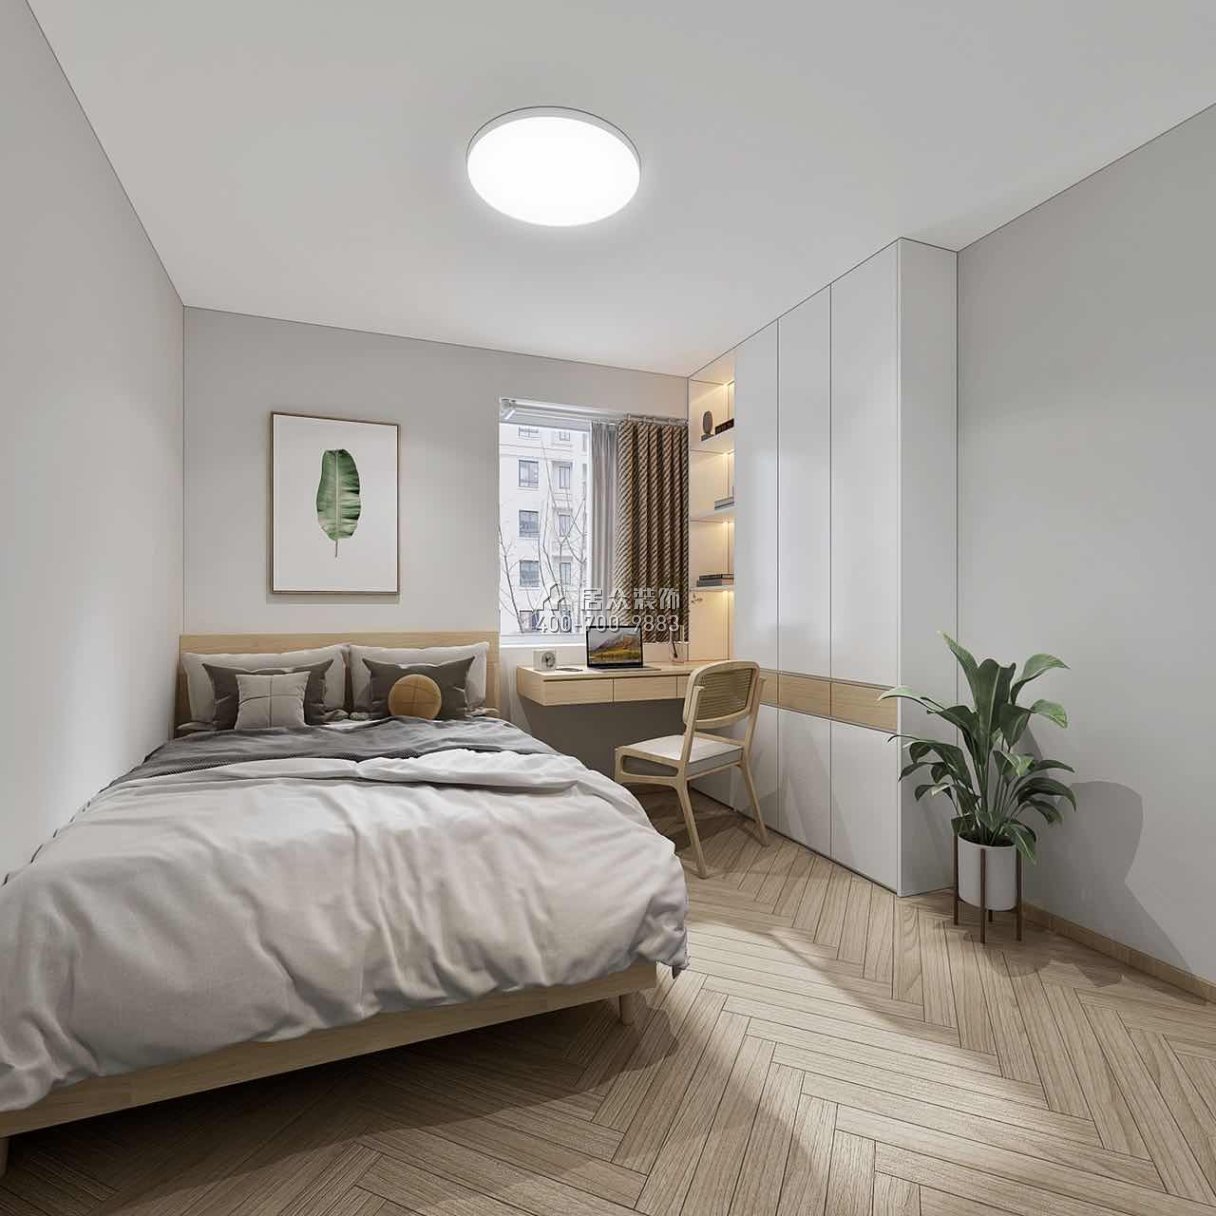 景鹏大厦100平方米现代简约风格平层户型卧室装修效果图